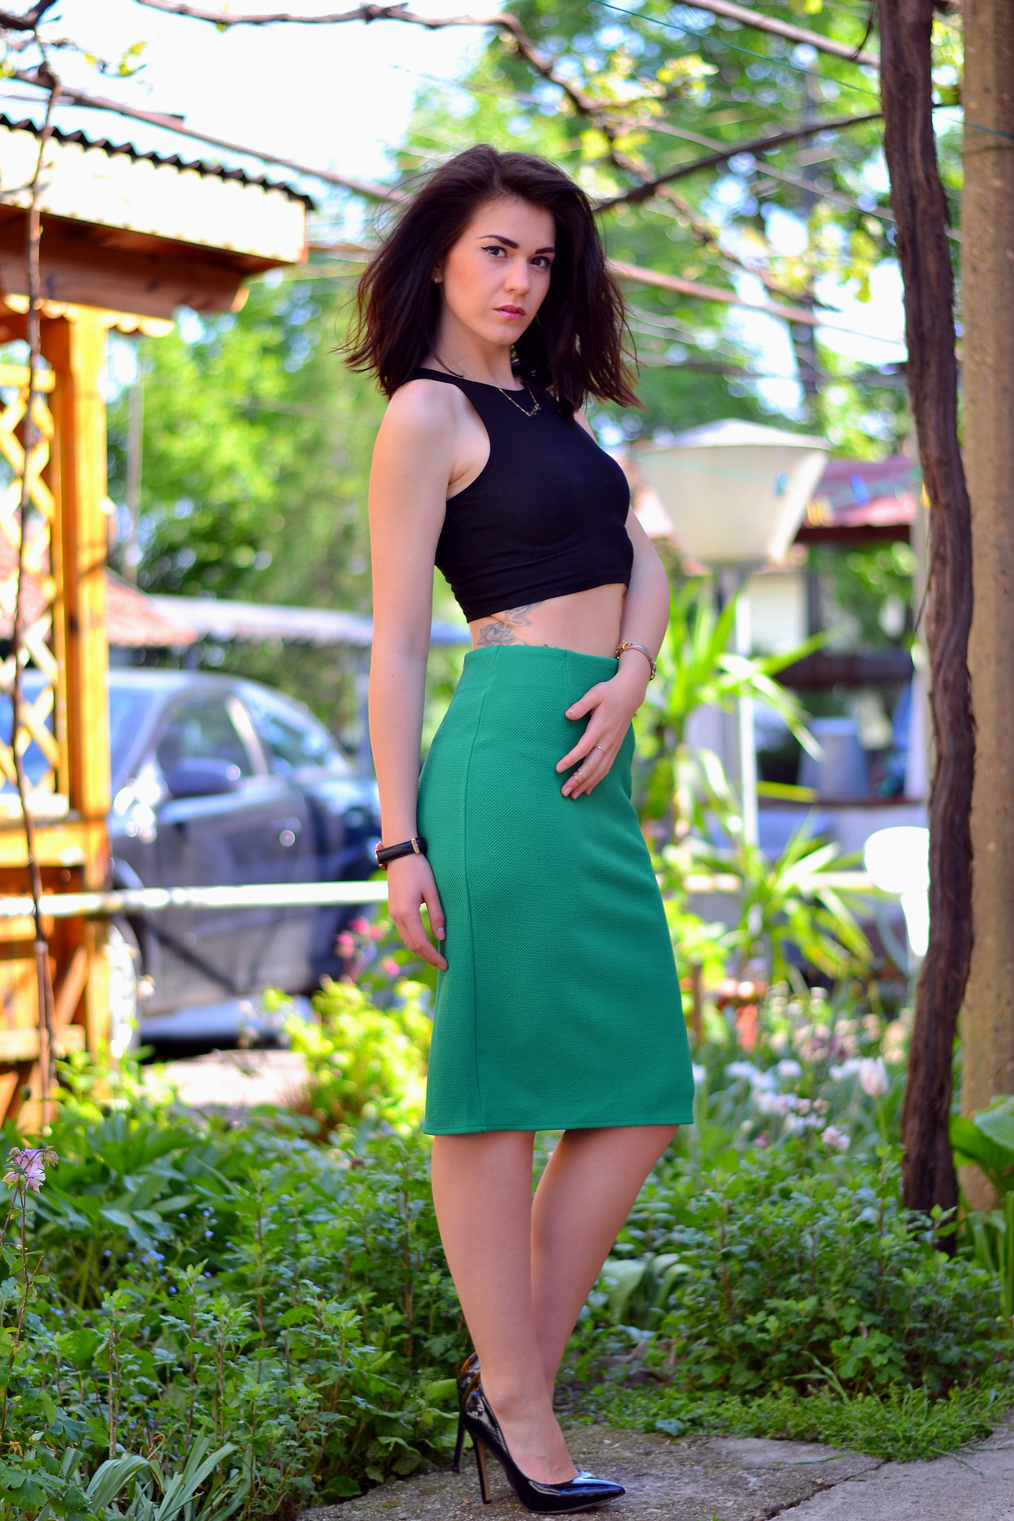 Green Pencil Skirt